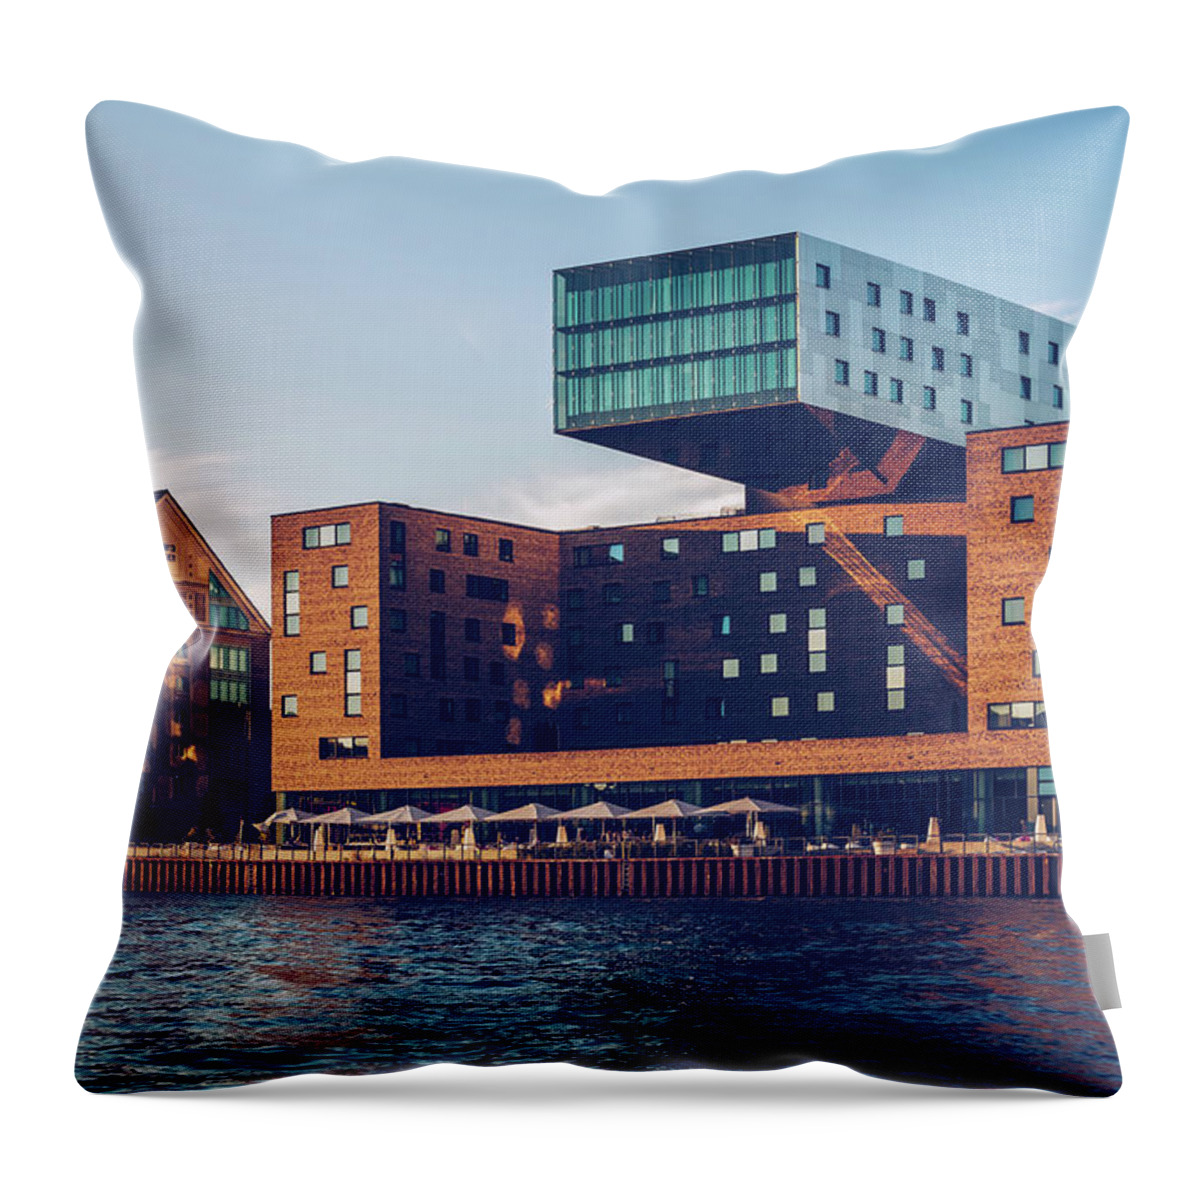 Berlin Throw Pillow featuring the photograph Berlin - Osthafen - Hotel nhow by Alexander Voss